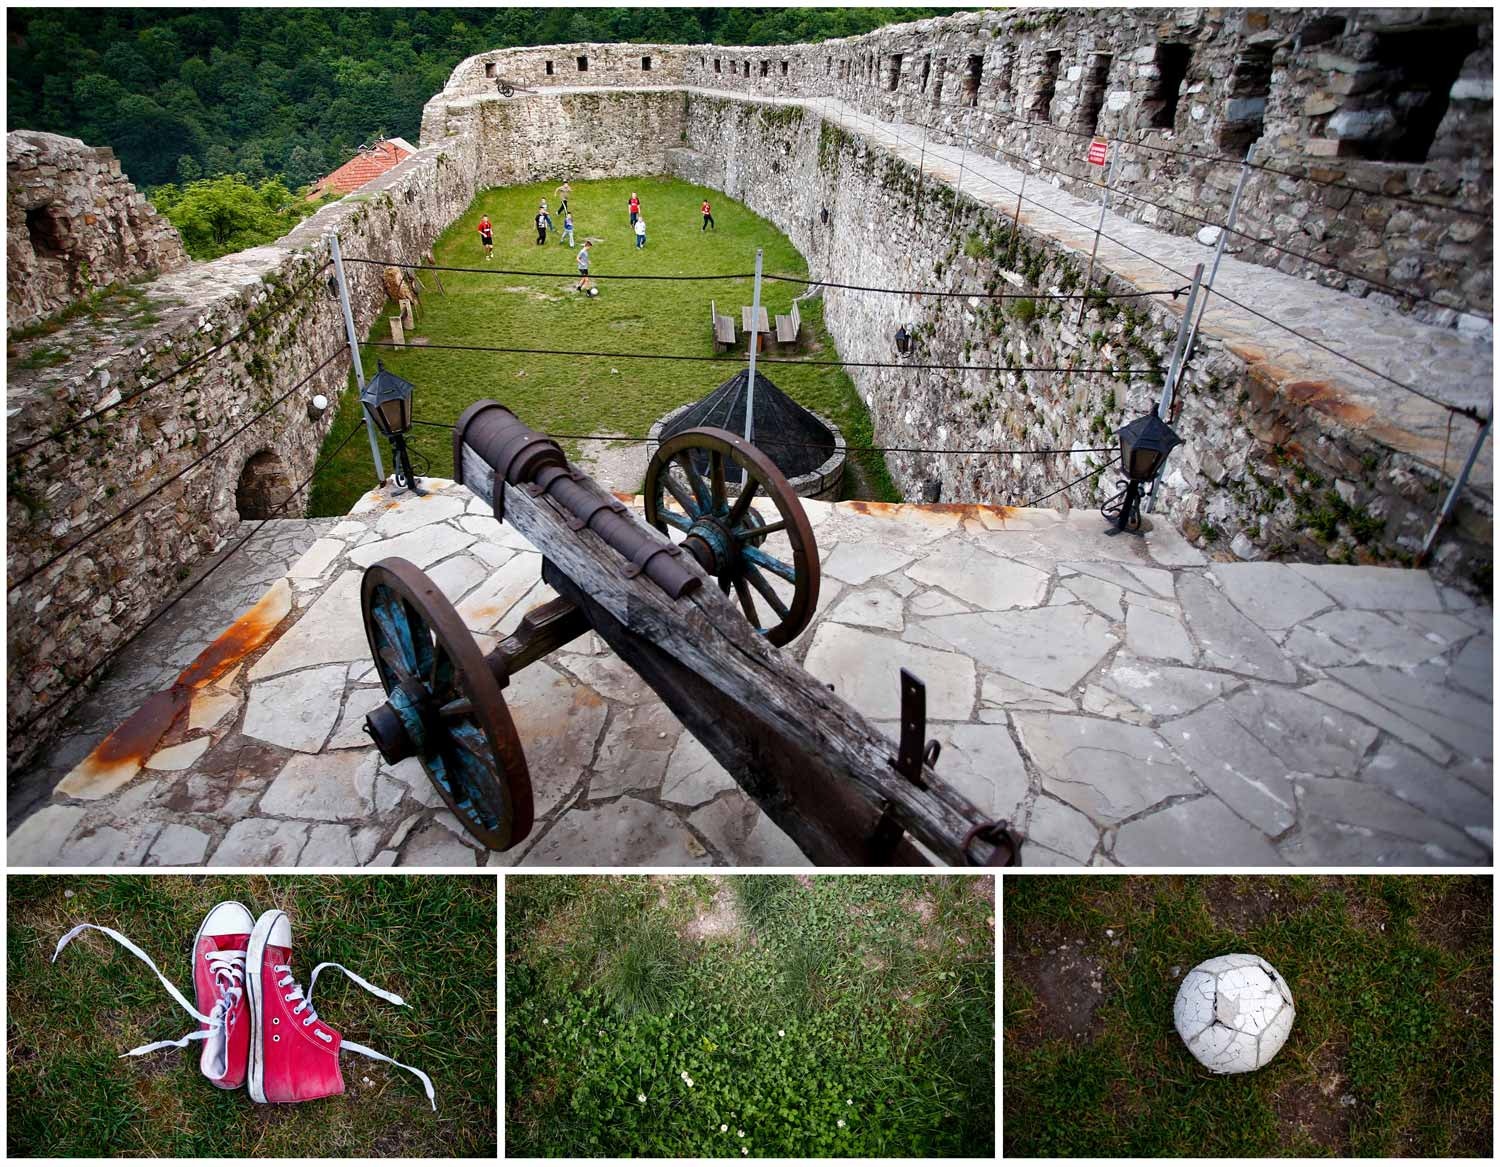  Os jardins de um antigo monumento constru&iacute;do no s&eacute;culo XIV, em Vranduk, na B&oacute;snia e Herzegovina, s&atilde;o palco de um jogo de futebol entre crian&ccedil;as. Foto: Dado Ruvic - Reuters    